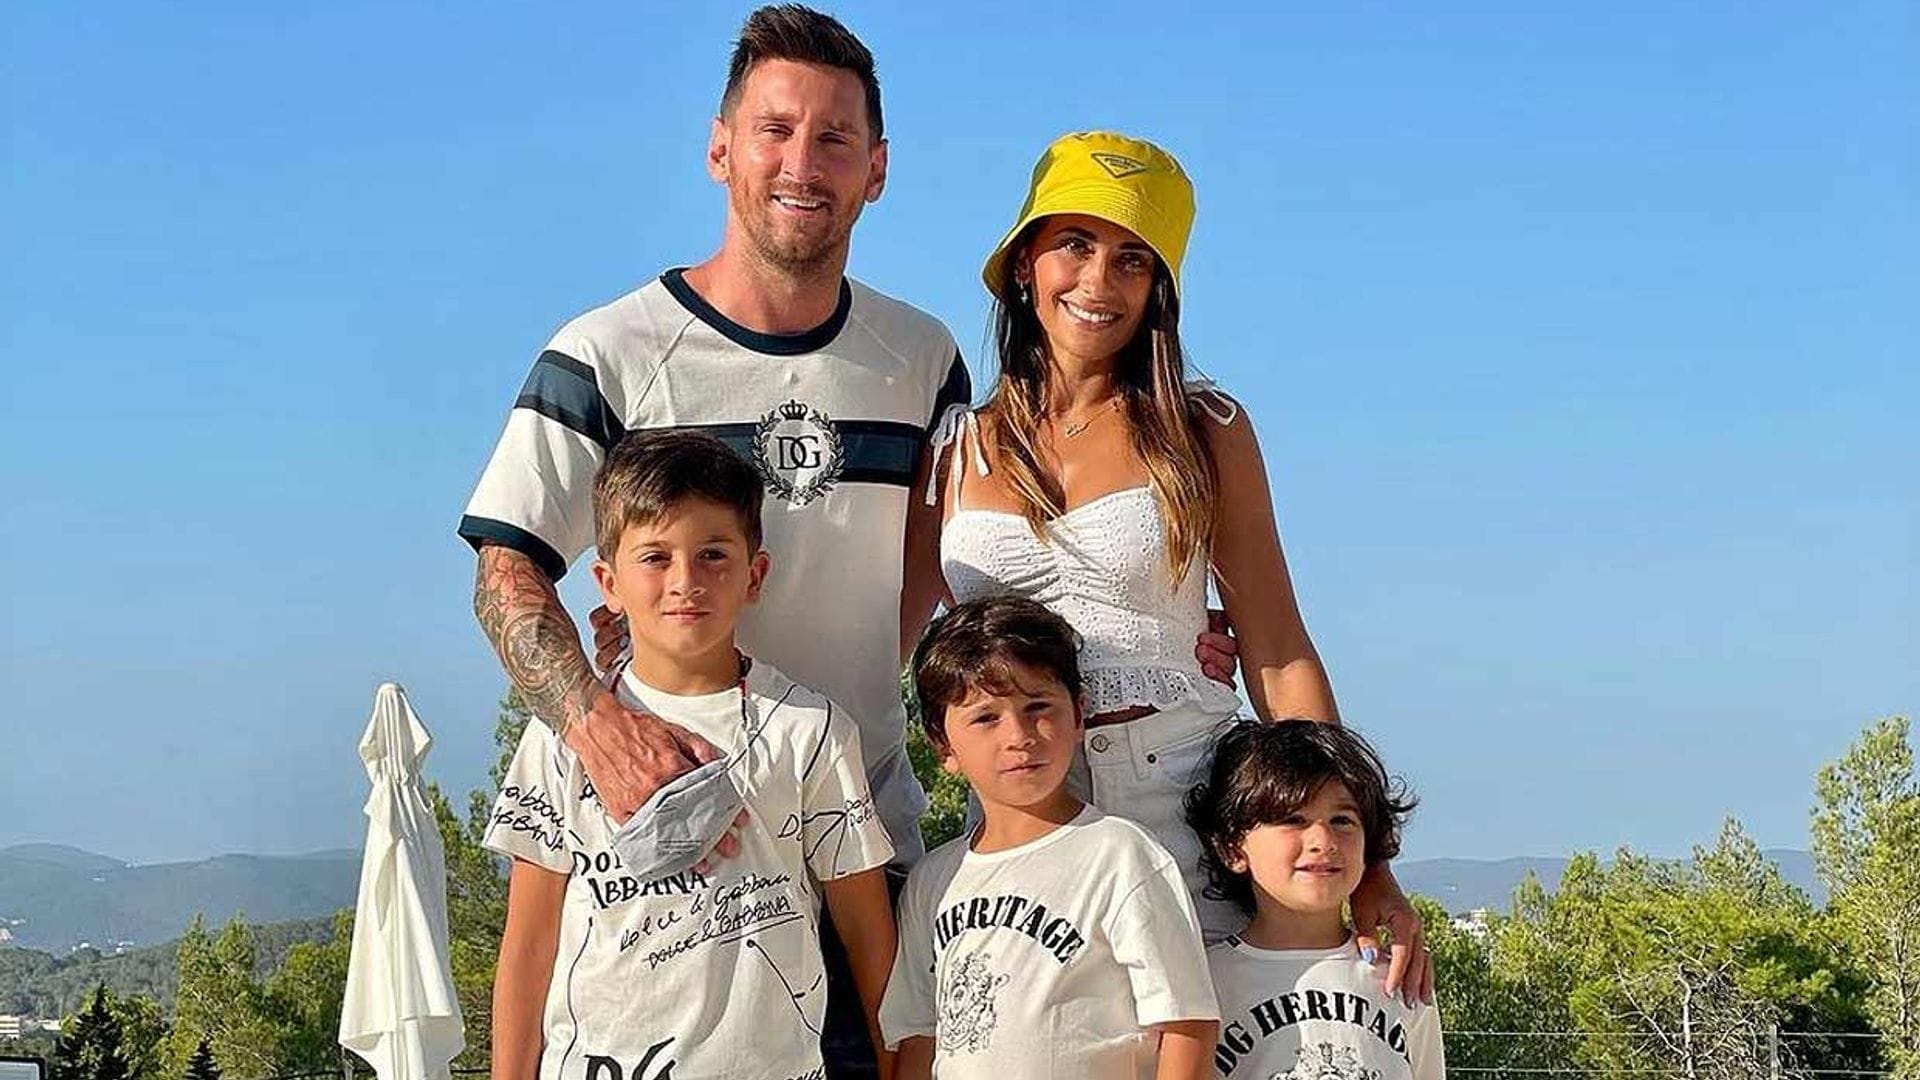 Nueva etapa para la familia Messi: el jugador no seguirá en el F.C. Barcelona